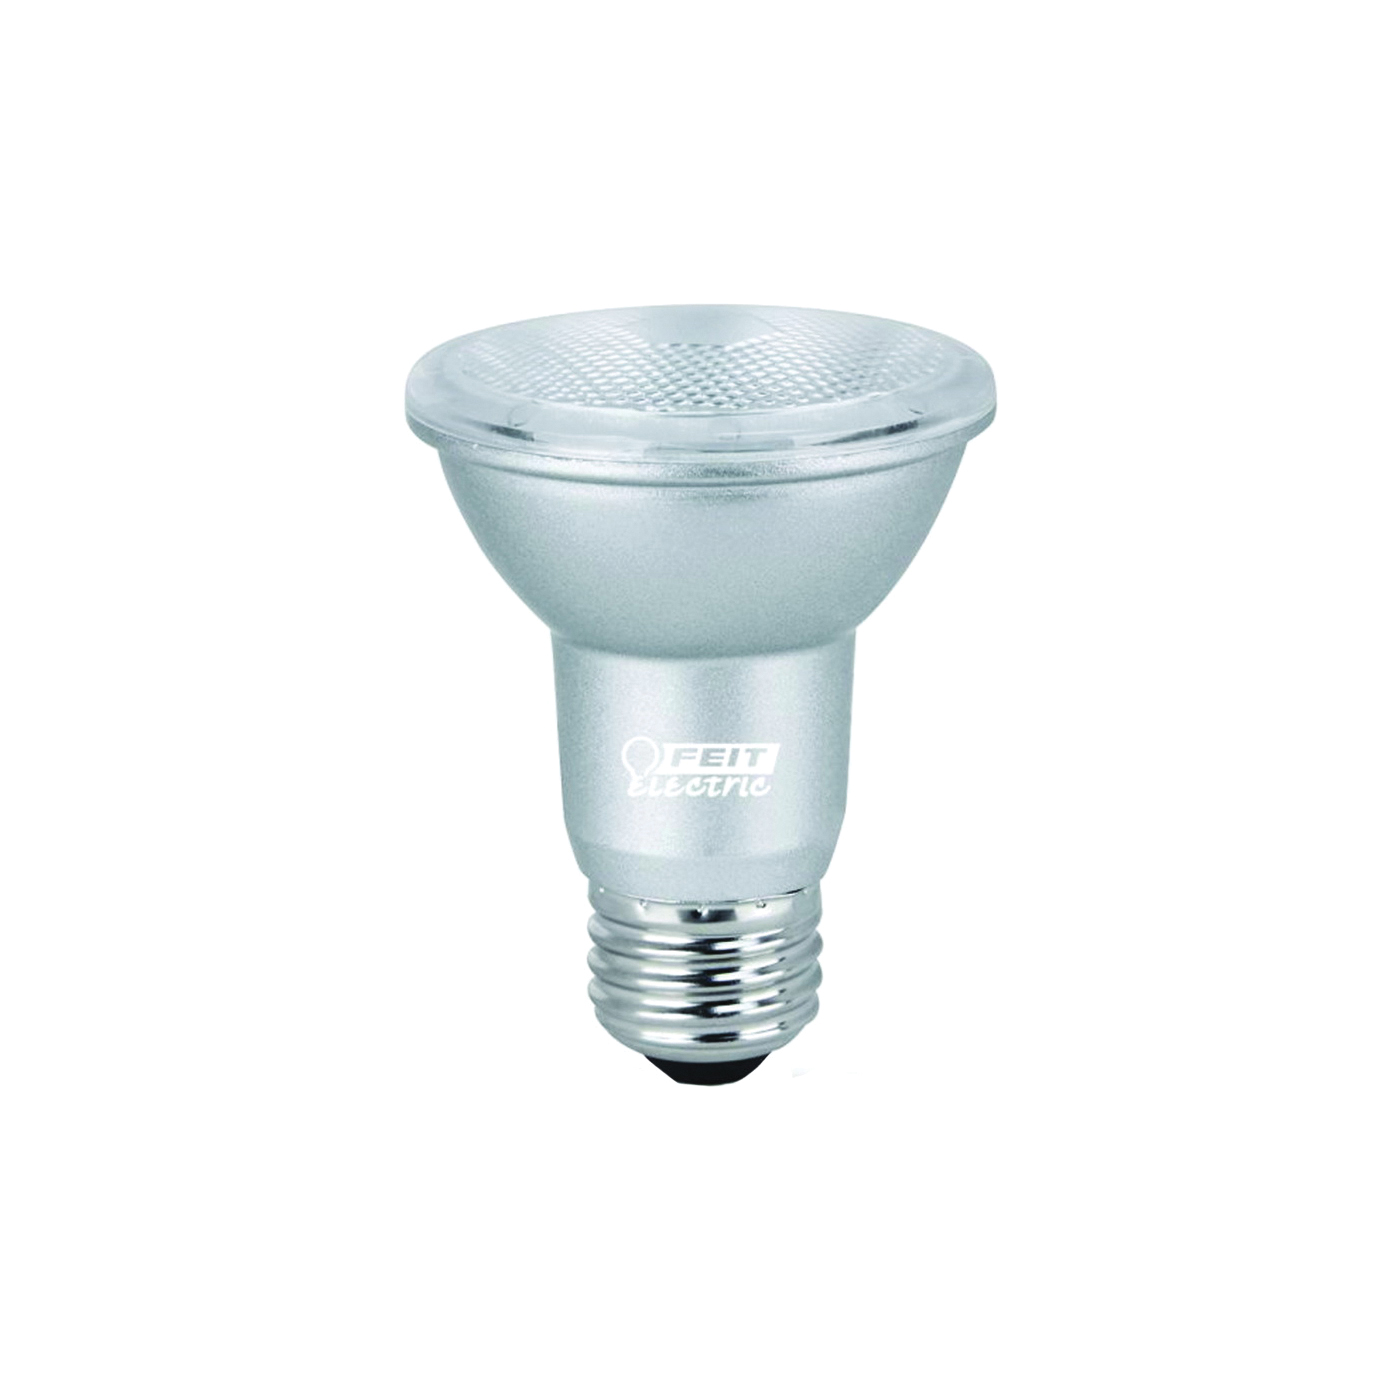 PAR20/850/LEDG11 LED Lamp, Flood/Spotlight, PAR20 Lamp, 50 W Equivalent, E26 Lamp Base, Dimmable